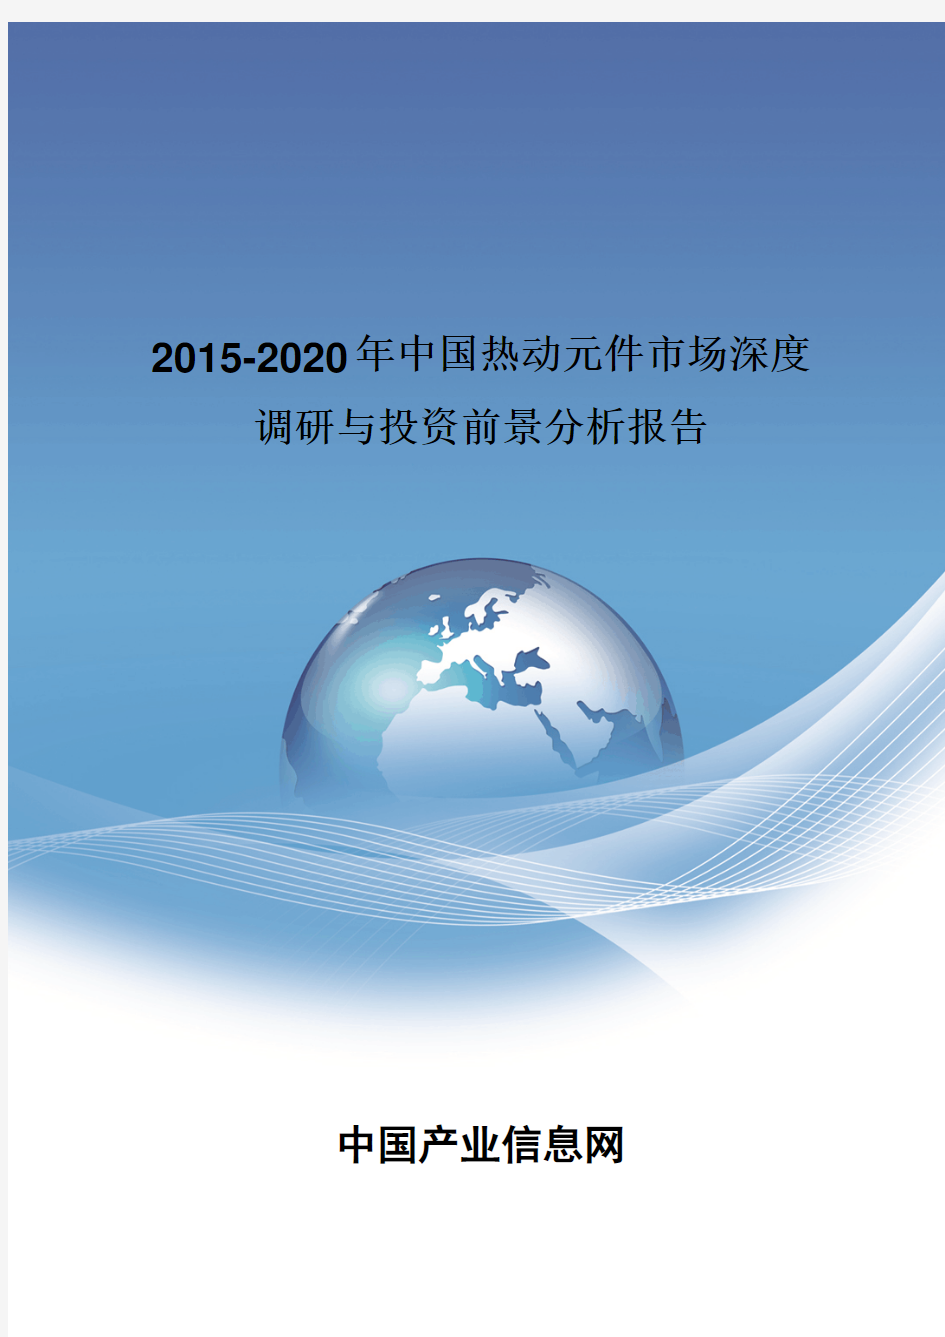 2015-2020年中国热动元件市场深度调研报告